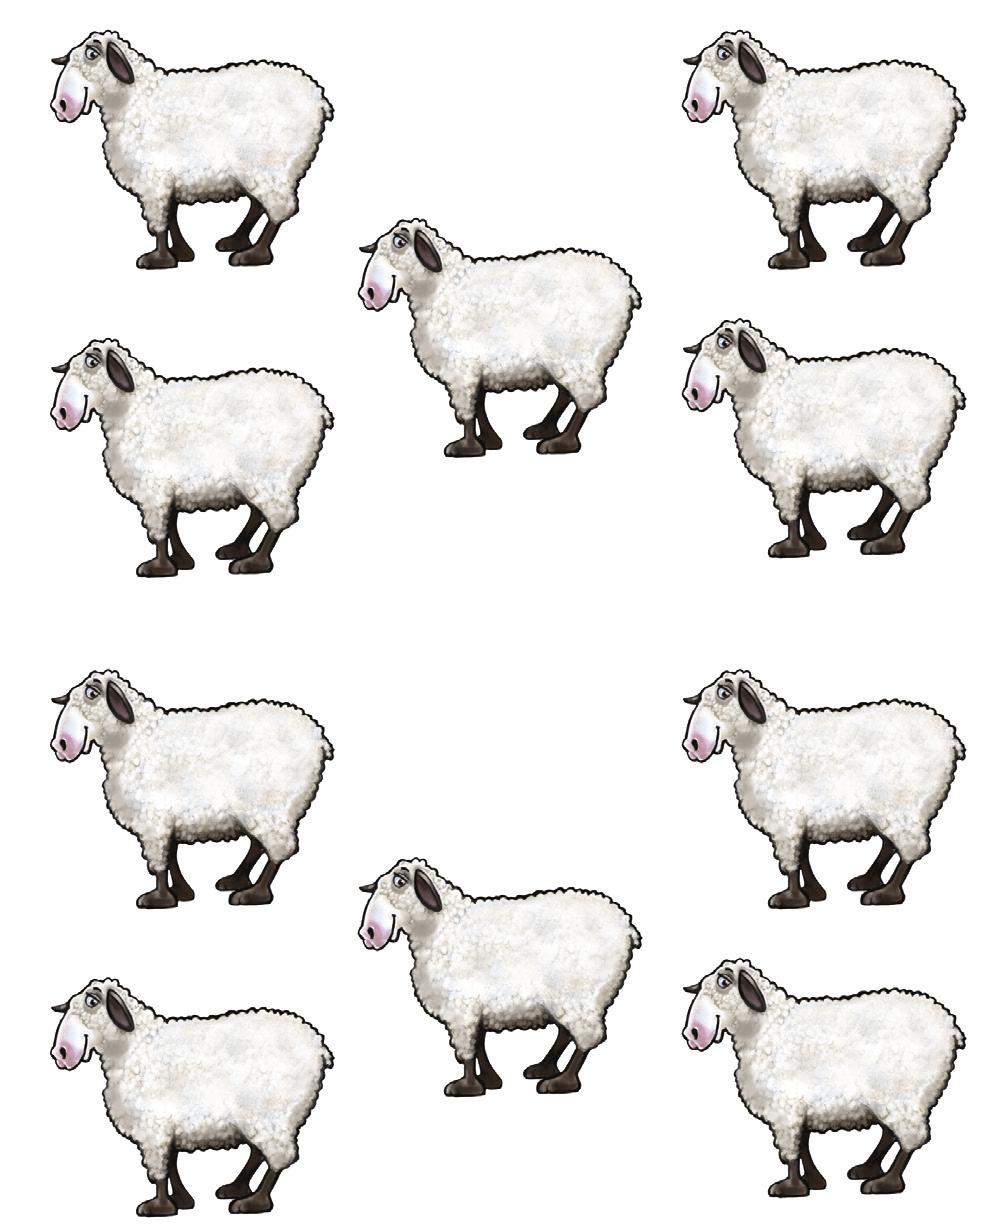 Sheep (June